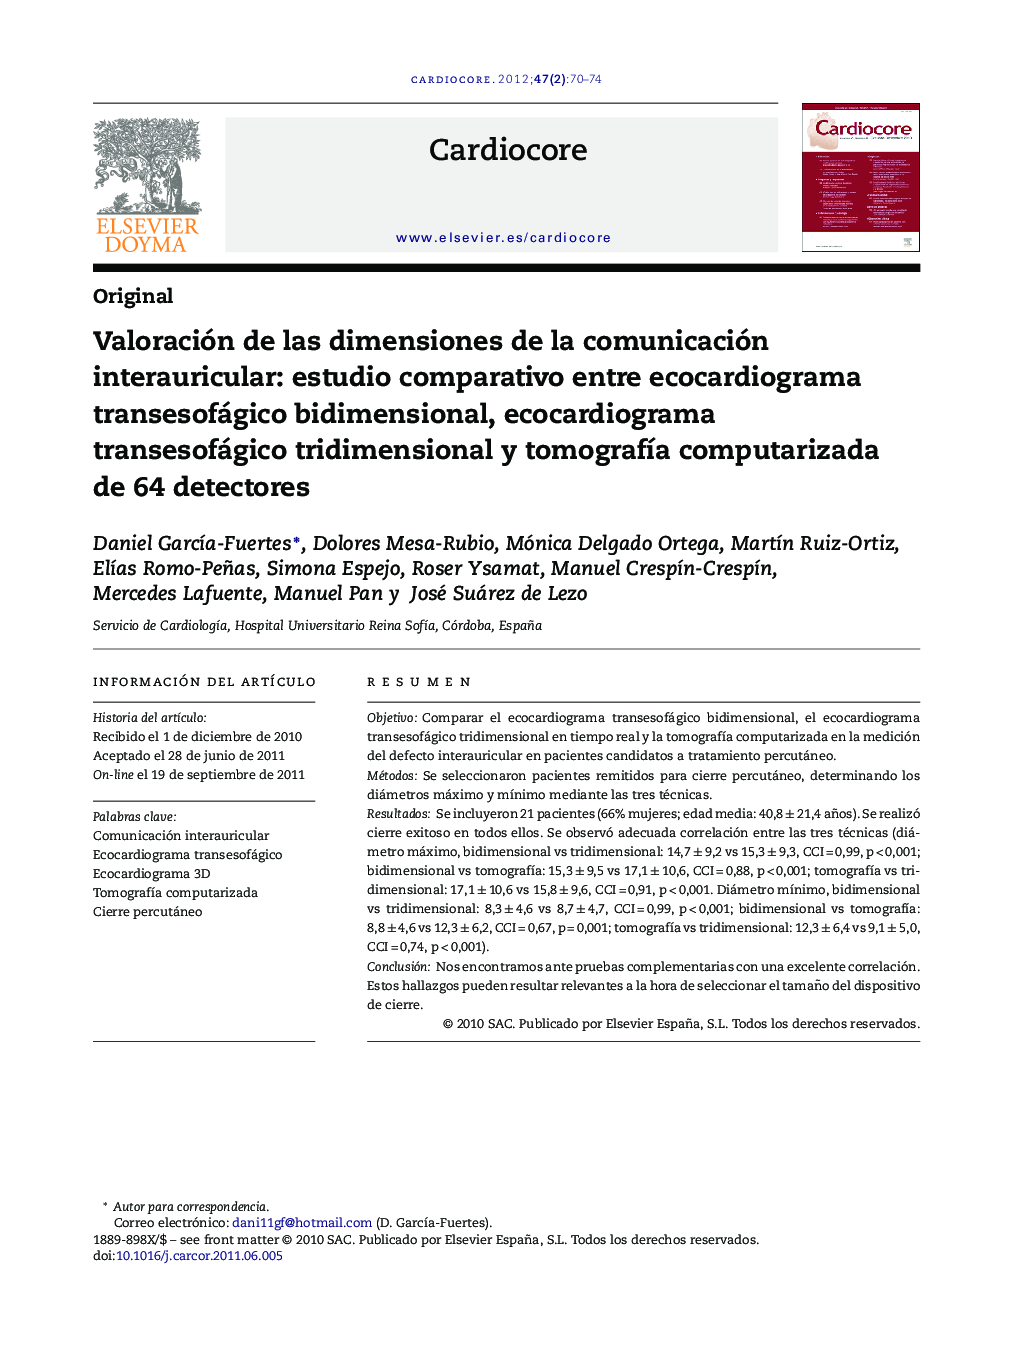 Valoración de las dimensiones de la comunicación interauricular: estudio comparativo entre ecocardiograma transesofágico bidimensional, ecocardiograma transesofágico tridimensional y tomografÃ­a computarizada de 64 detectores